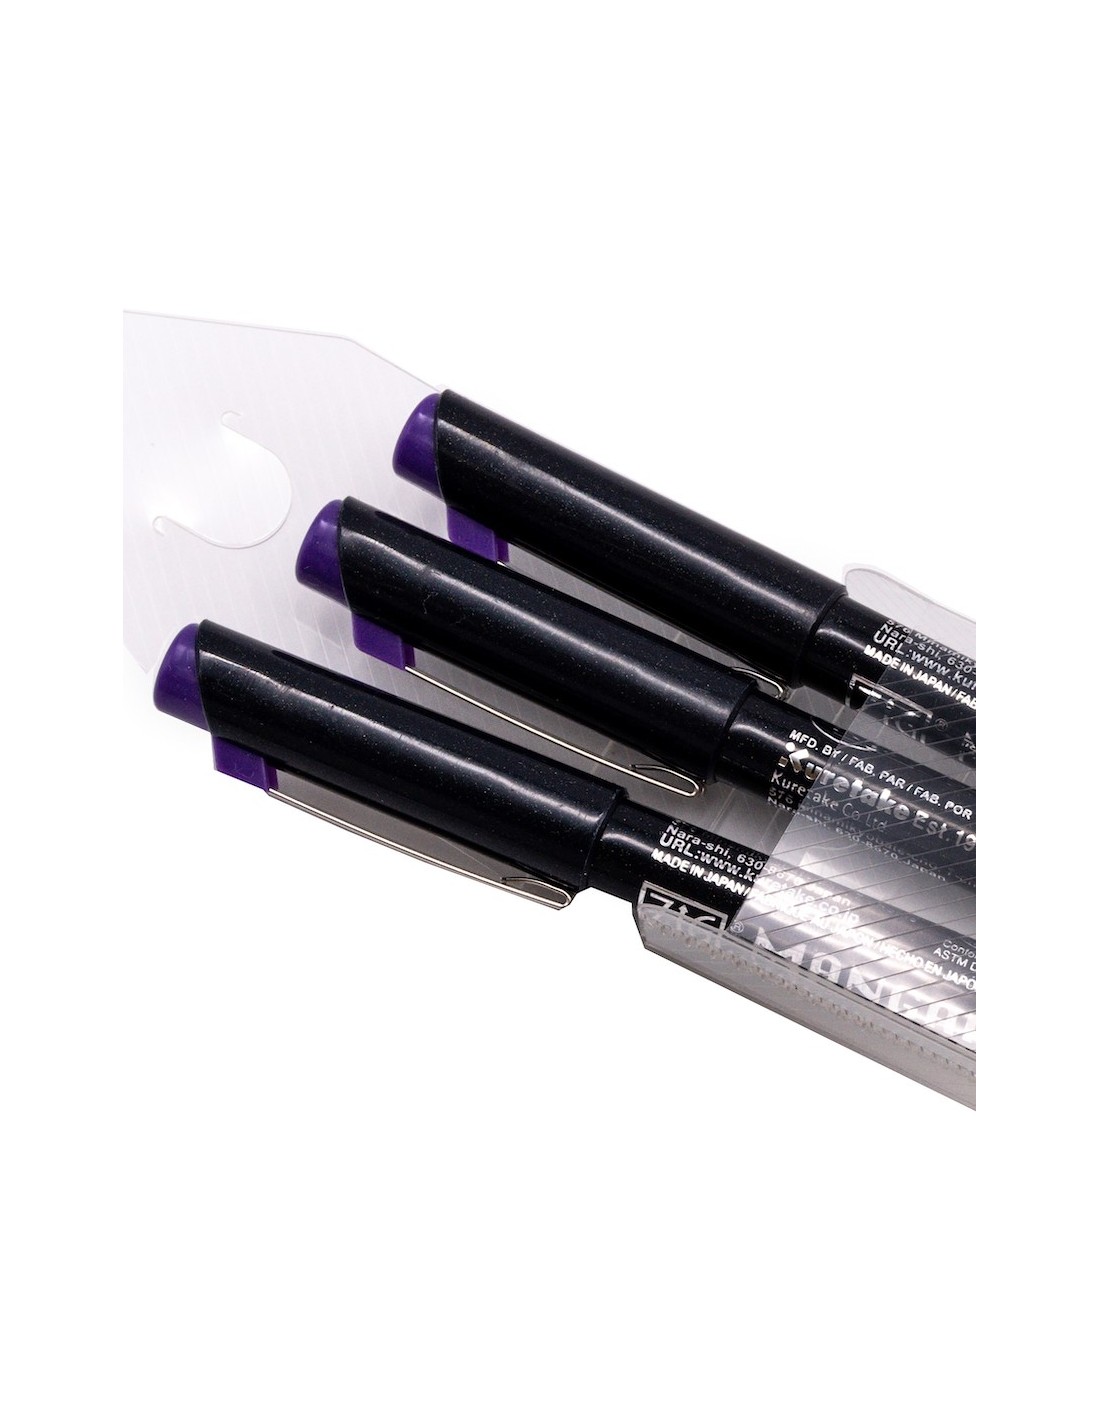 Kuretake Japanese Manga Pen Viola - pack of 3 pens with tips of various  sizes